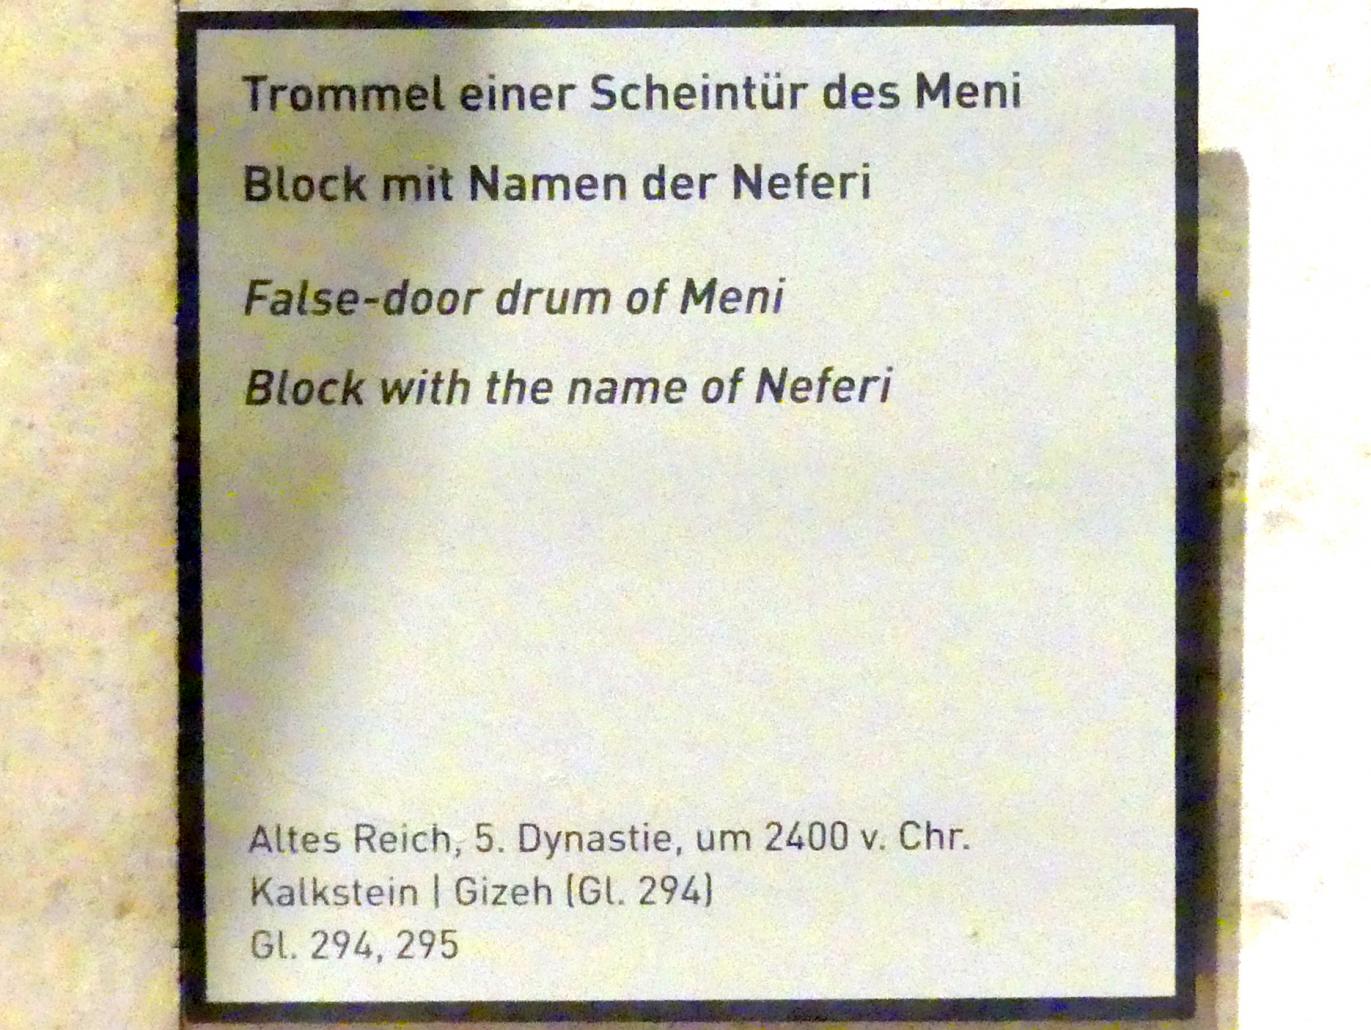 Block mit Namen der Neferi, 5. Dynastie, Undatiert, 2400 v. Chr., Bild 2/2